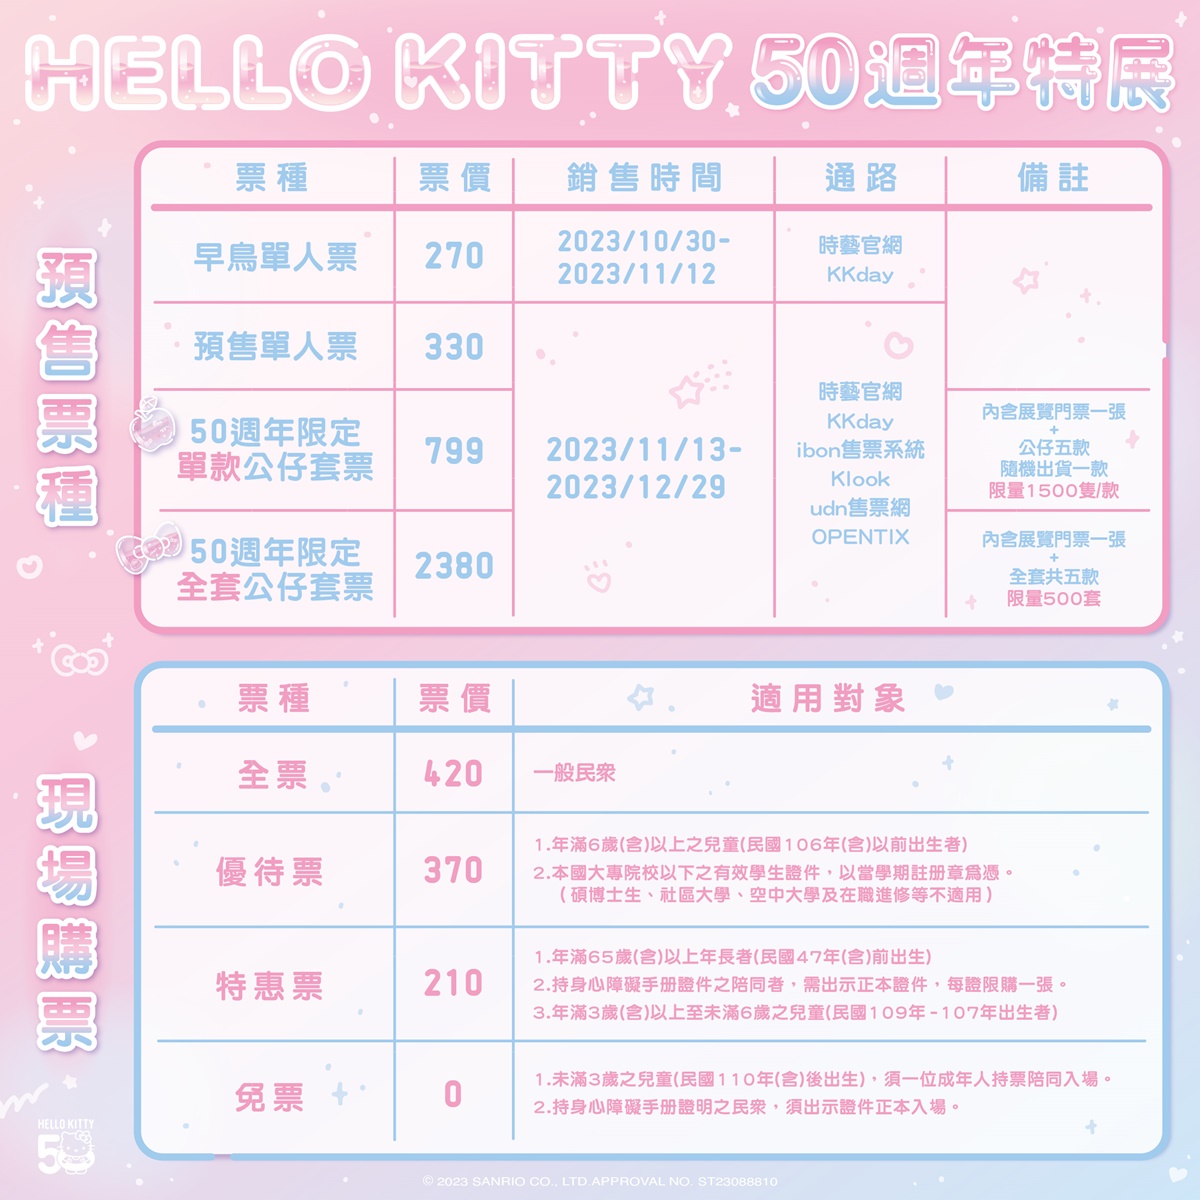 Hello Kitty 50週年特展票價資訊